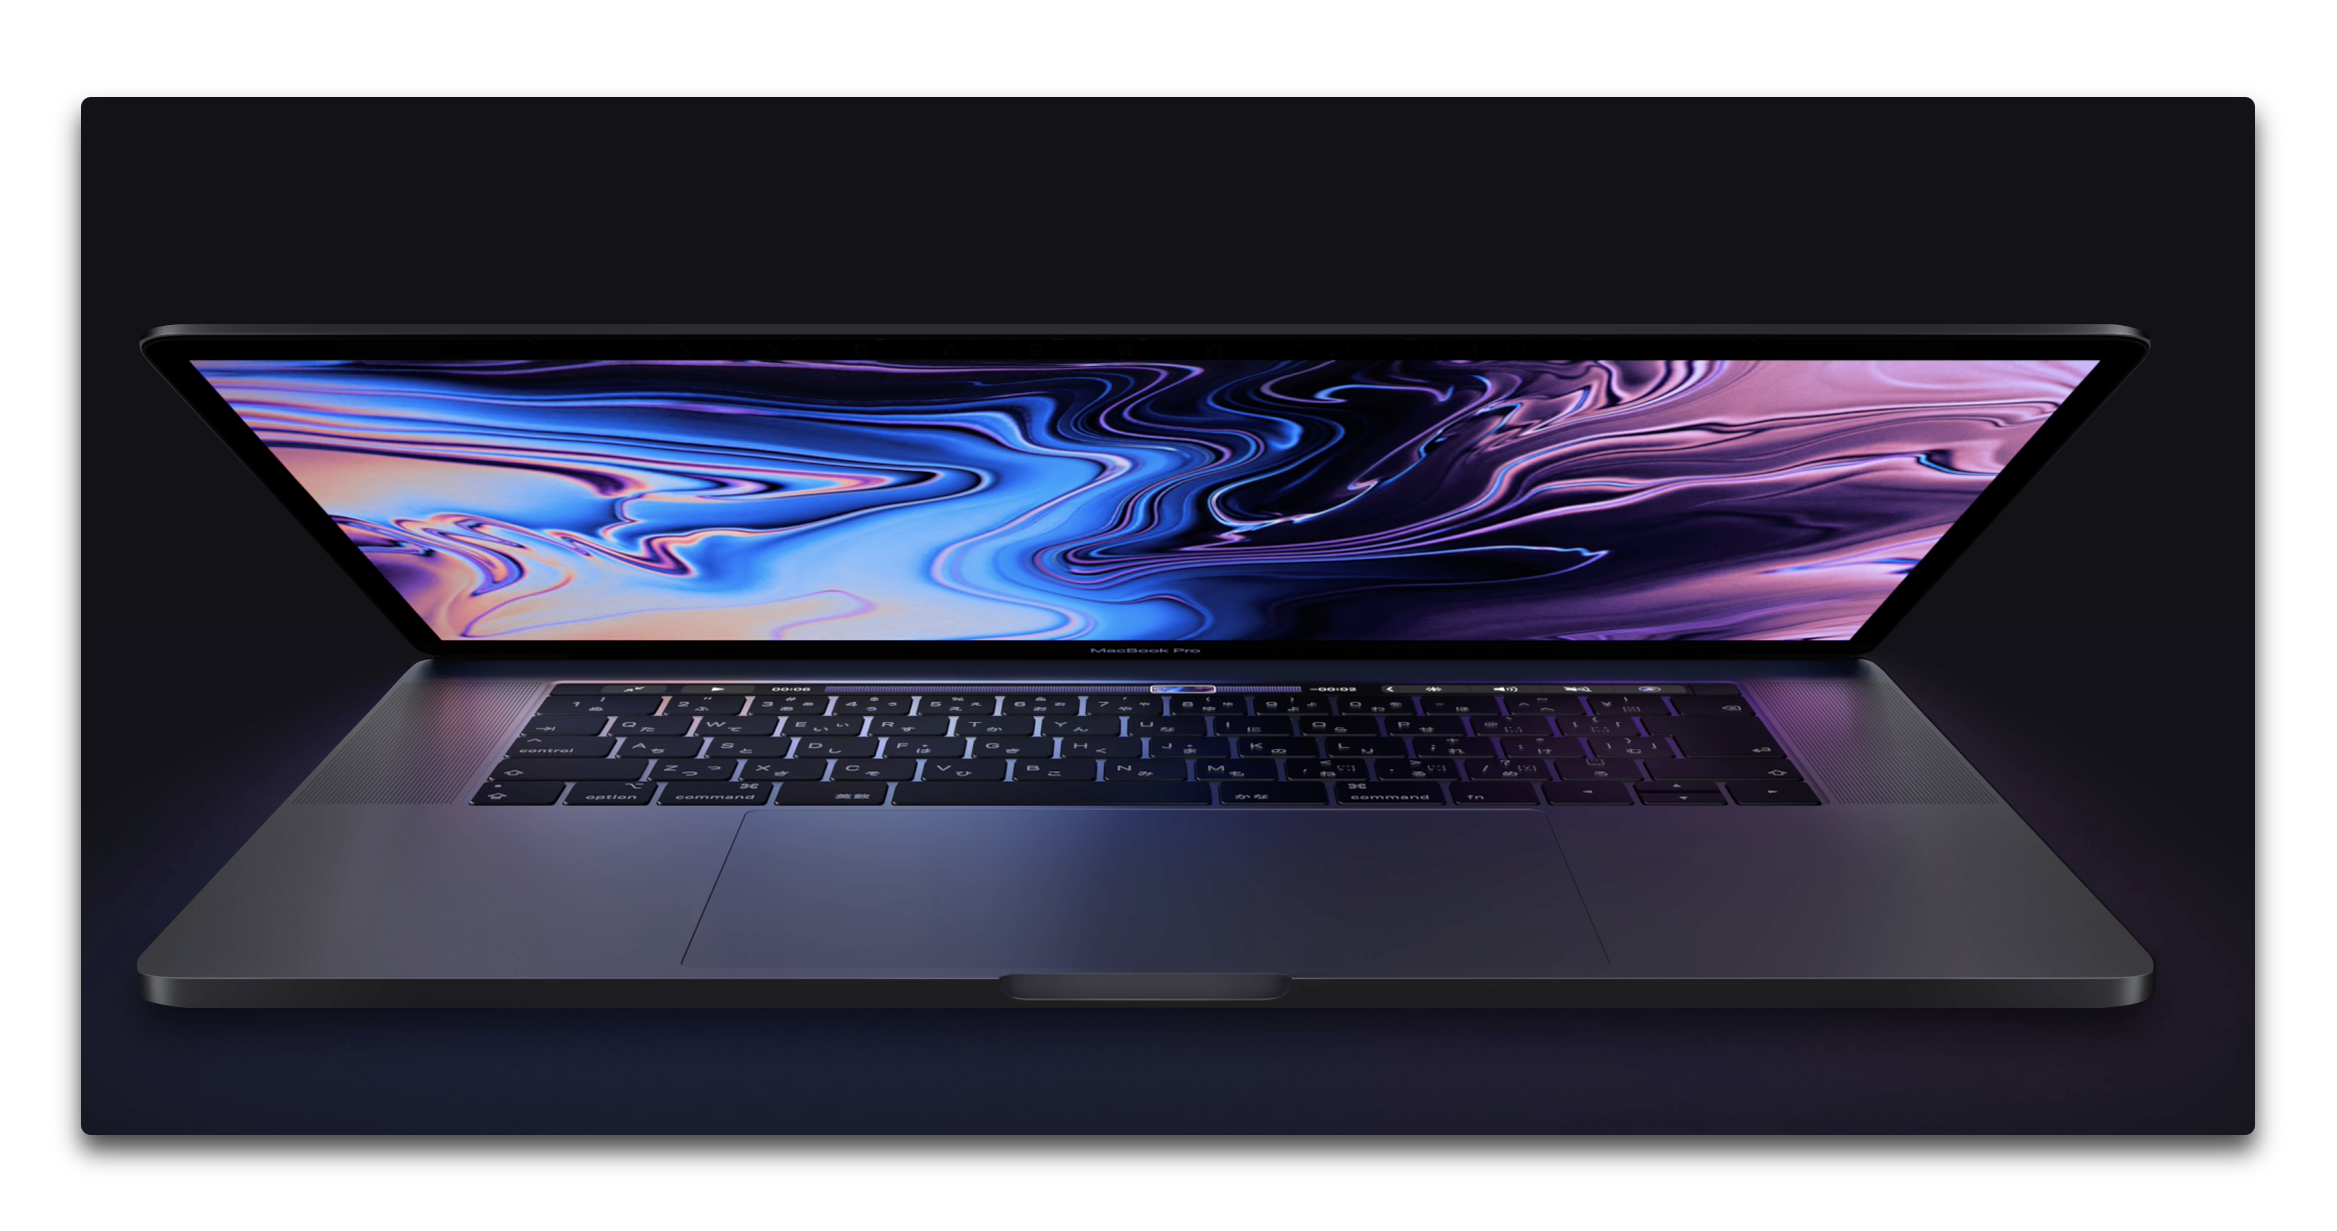 13インチMacBook Pro 2018 with Touch Barモデルの4つのThunderbolt 3ポートはフルスピード